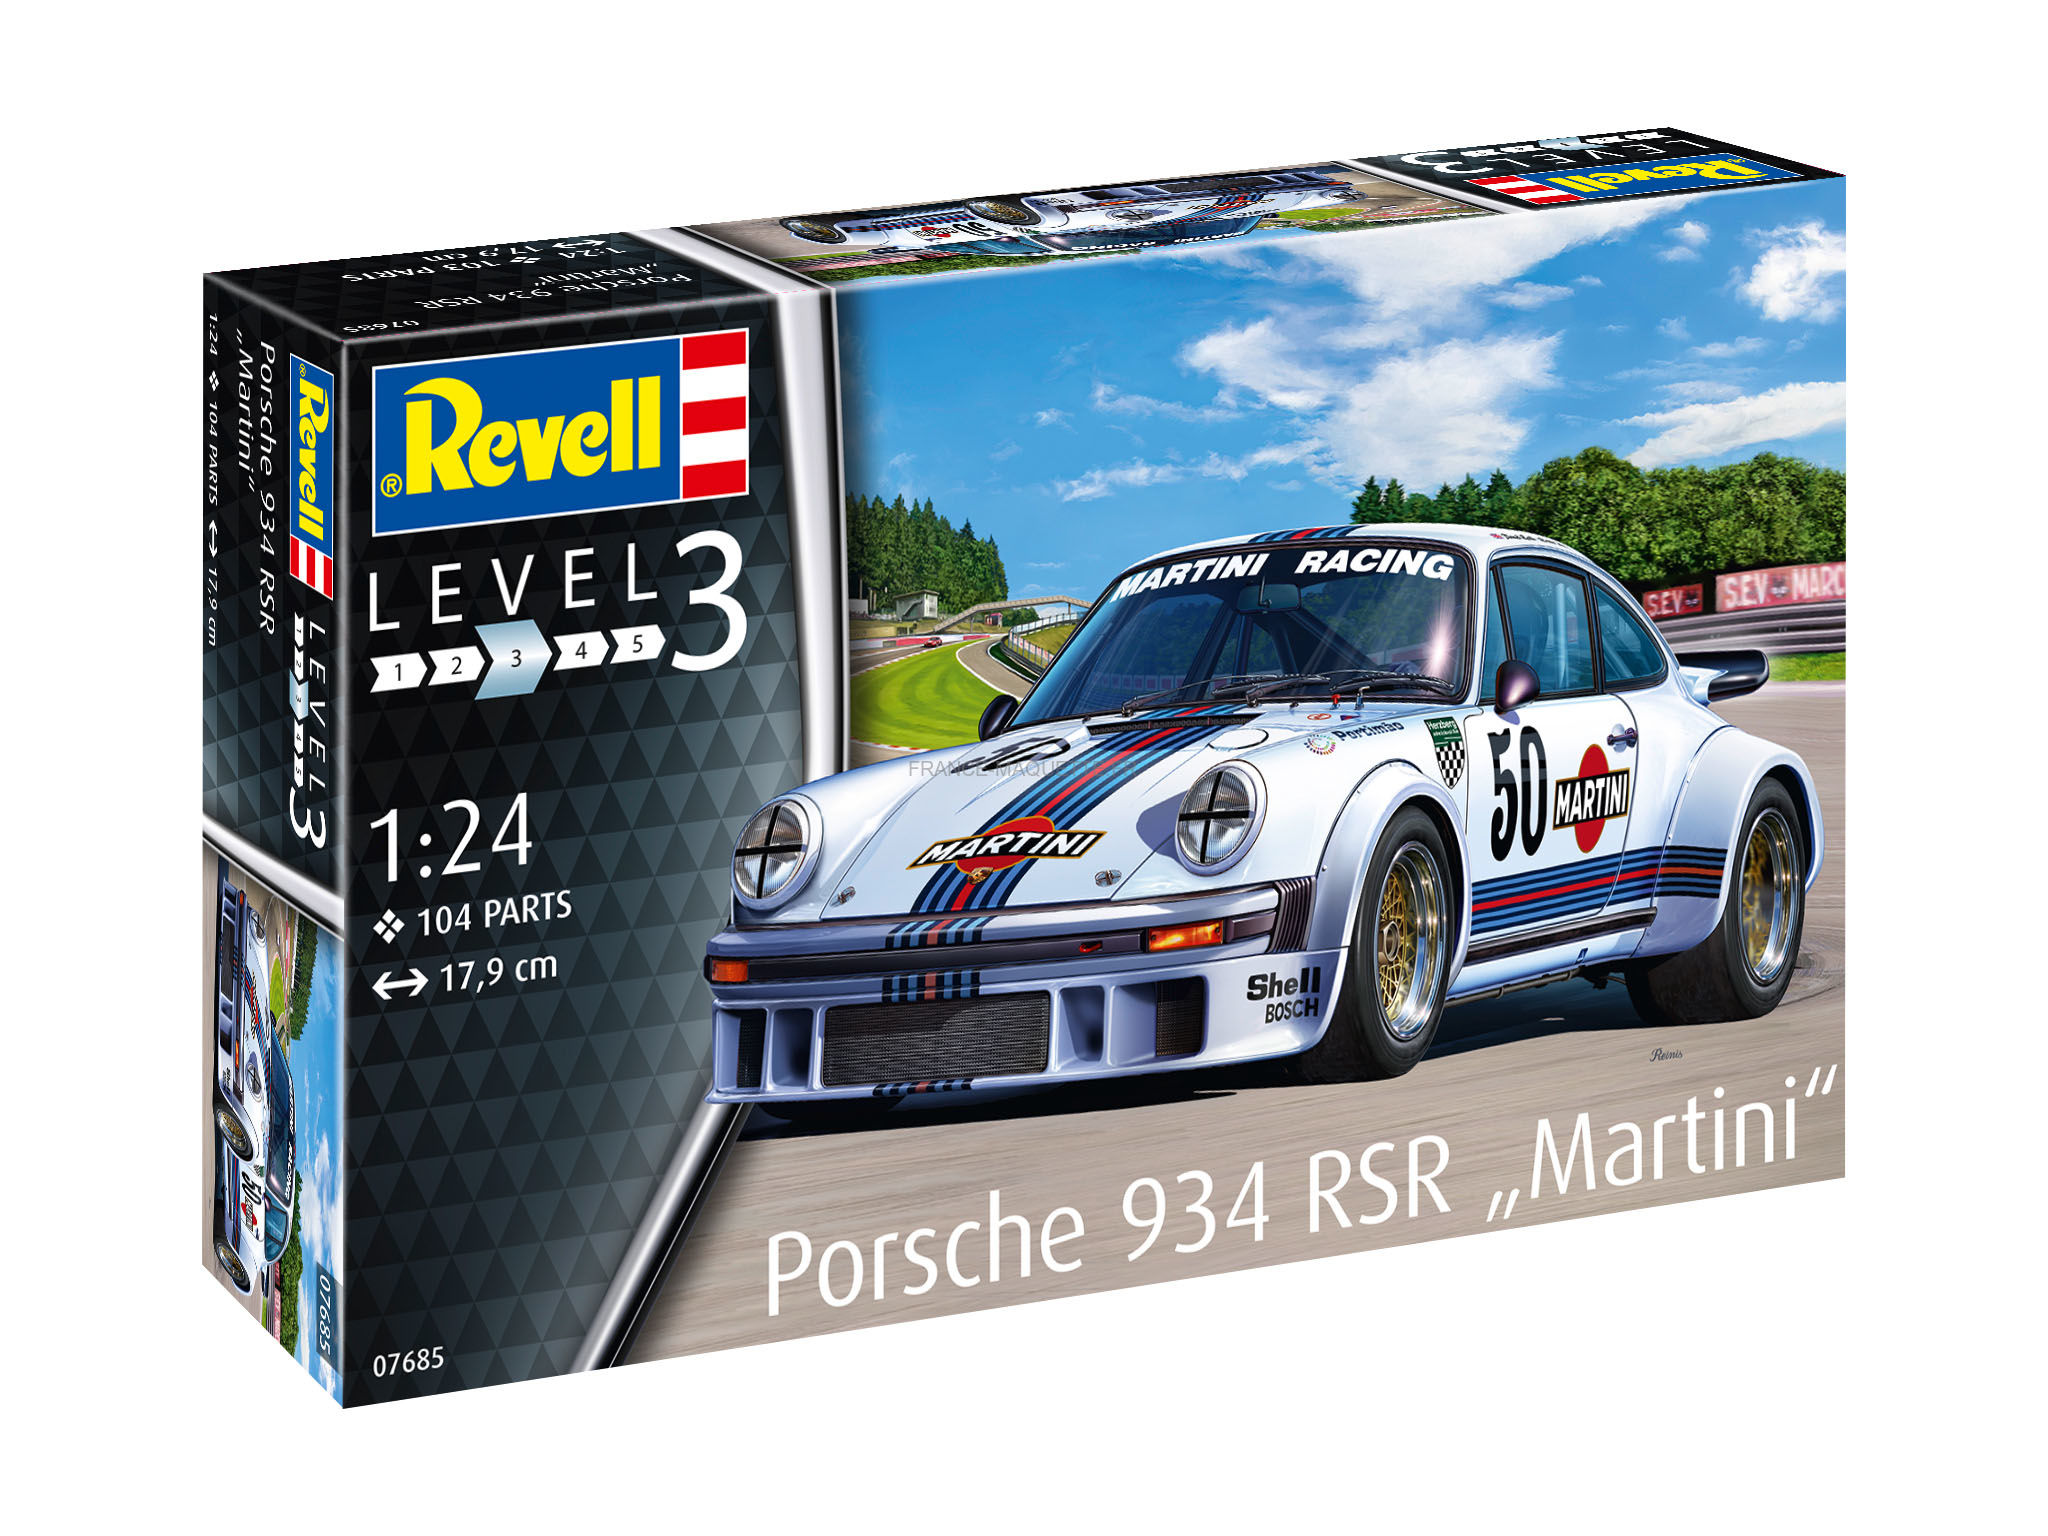 Maquette Revell Porsche 934 Rsr martini 145 mm 1:24